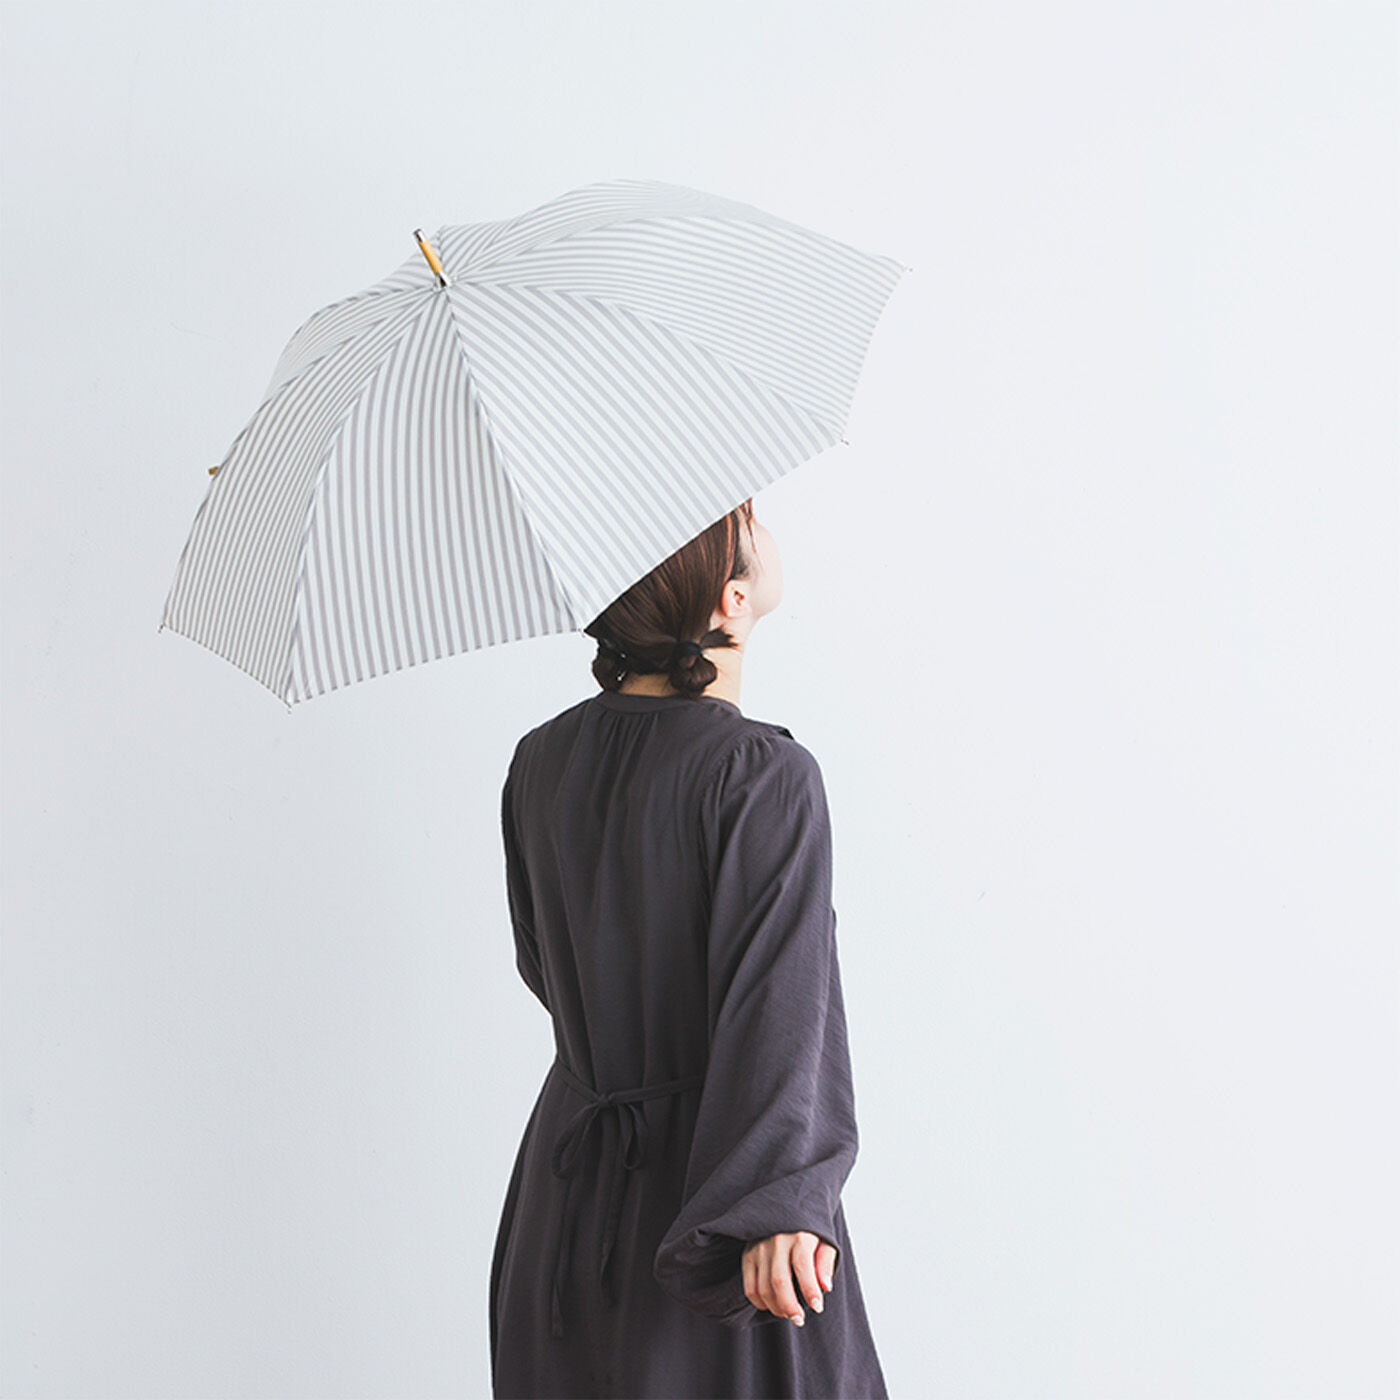 SeeMONO|涼しい顔でＵＶ対策　ストライプの晴雨兼用傘〈ＧＲＡＹ〉|竹材のシャフトで軽いのも魅力。ストライプがさわやかで涼し気。